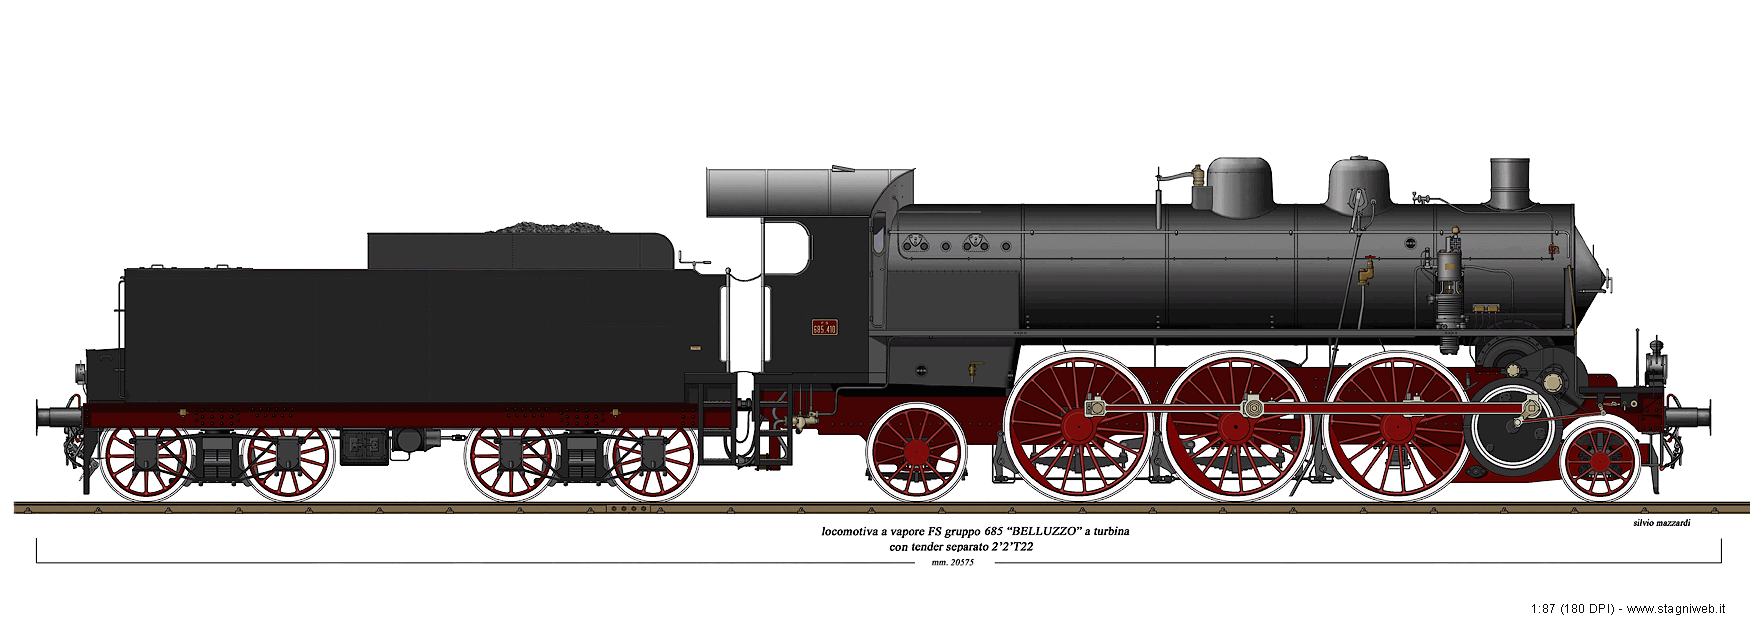 Locomotive a vapore con tender separato - 685.410 a turbina